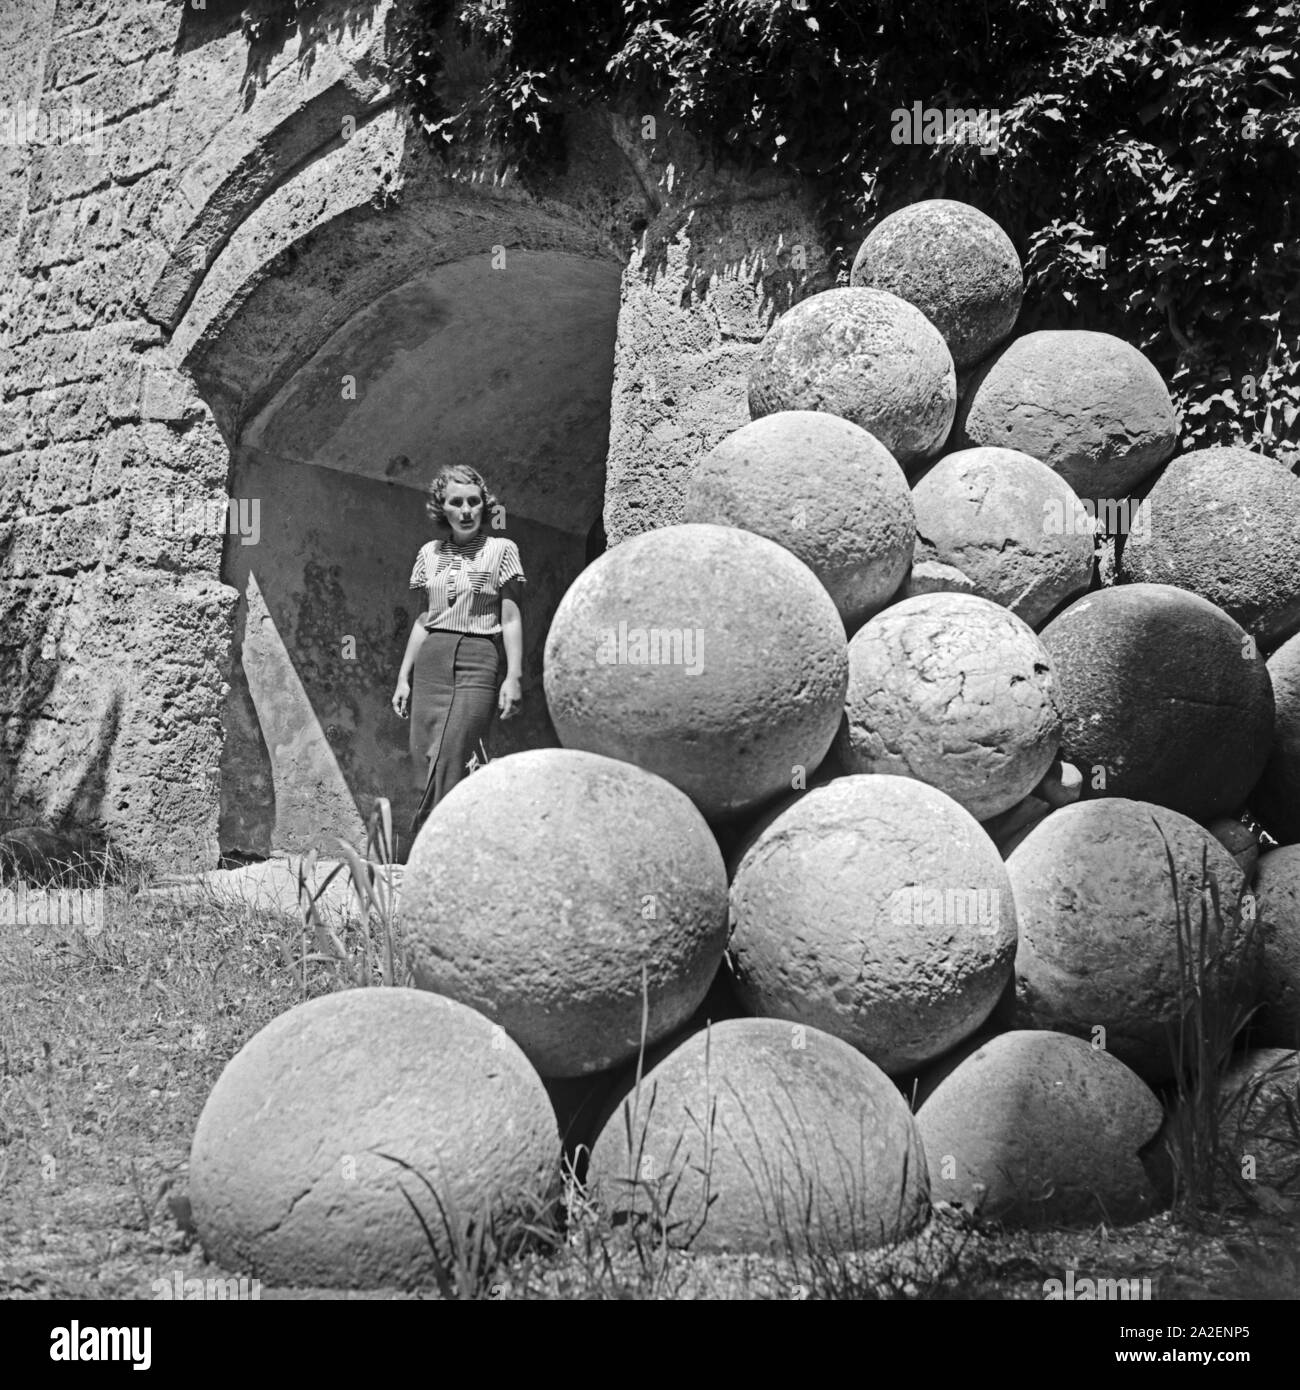 Eine Frau an einem Stapel alter Kanonenkugeln bei der Burg in Burghausen, Deutschland 1930er Jahre. A woman at old cannonballs at the old castle of Burghausen, Germany 1930s. Stock Photo